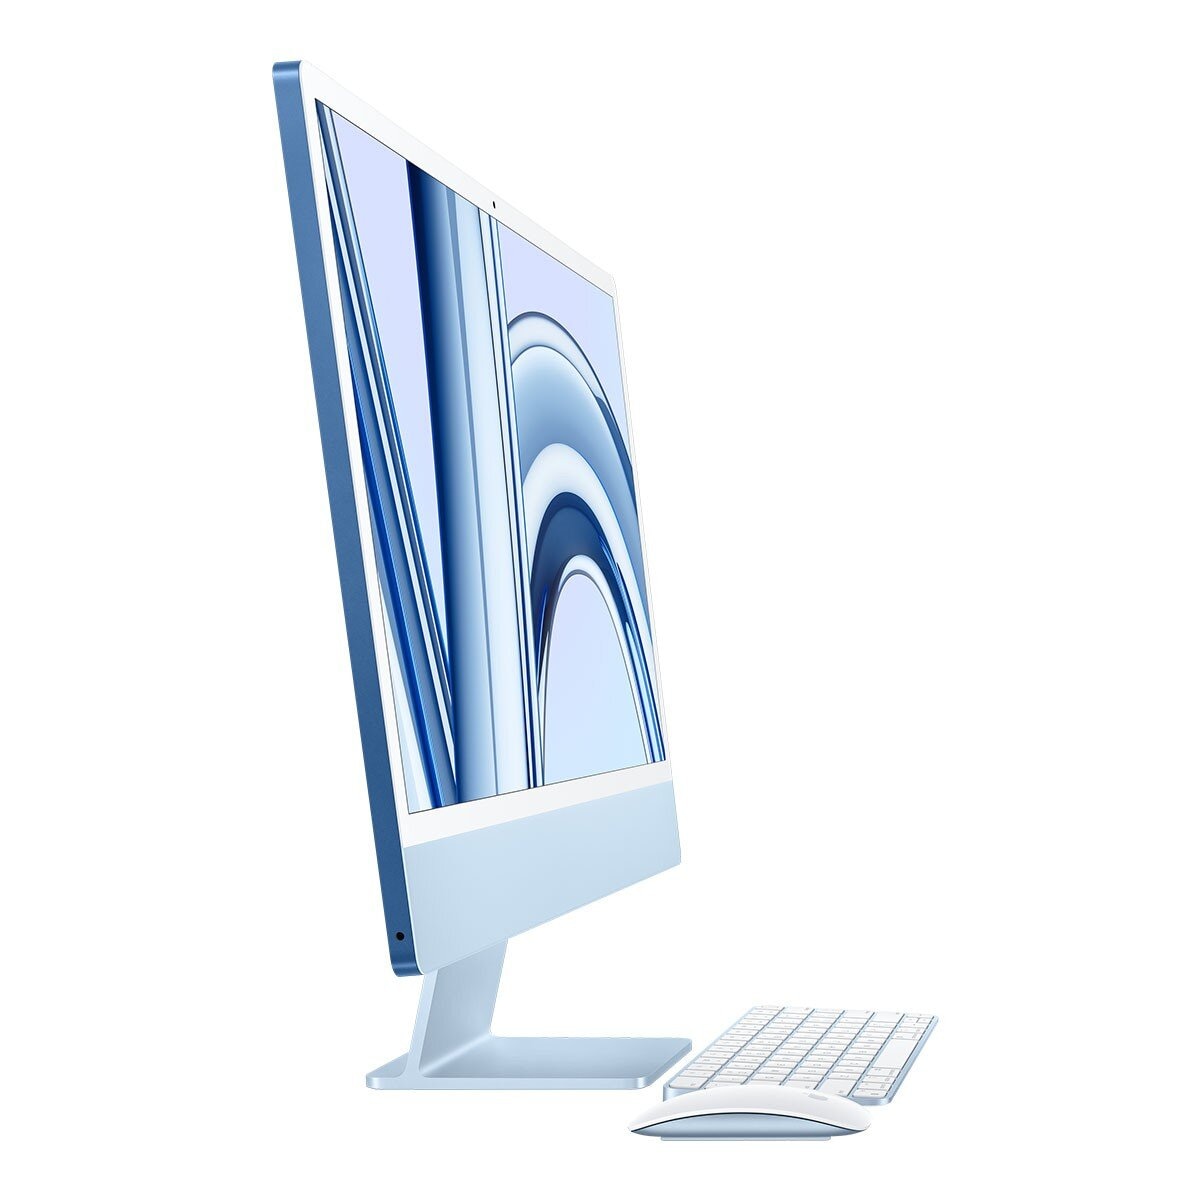 Apple iMac 24吋 搭配 M3 晶片 8 核心 CPU 8 核心 GPU 256GB SSD